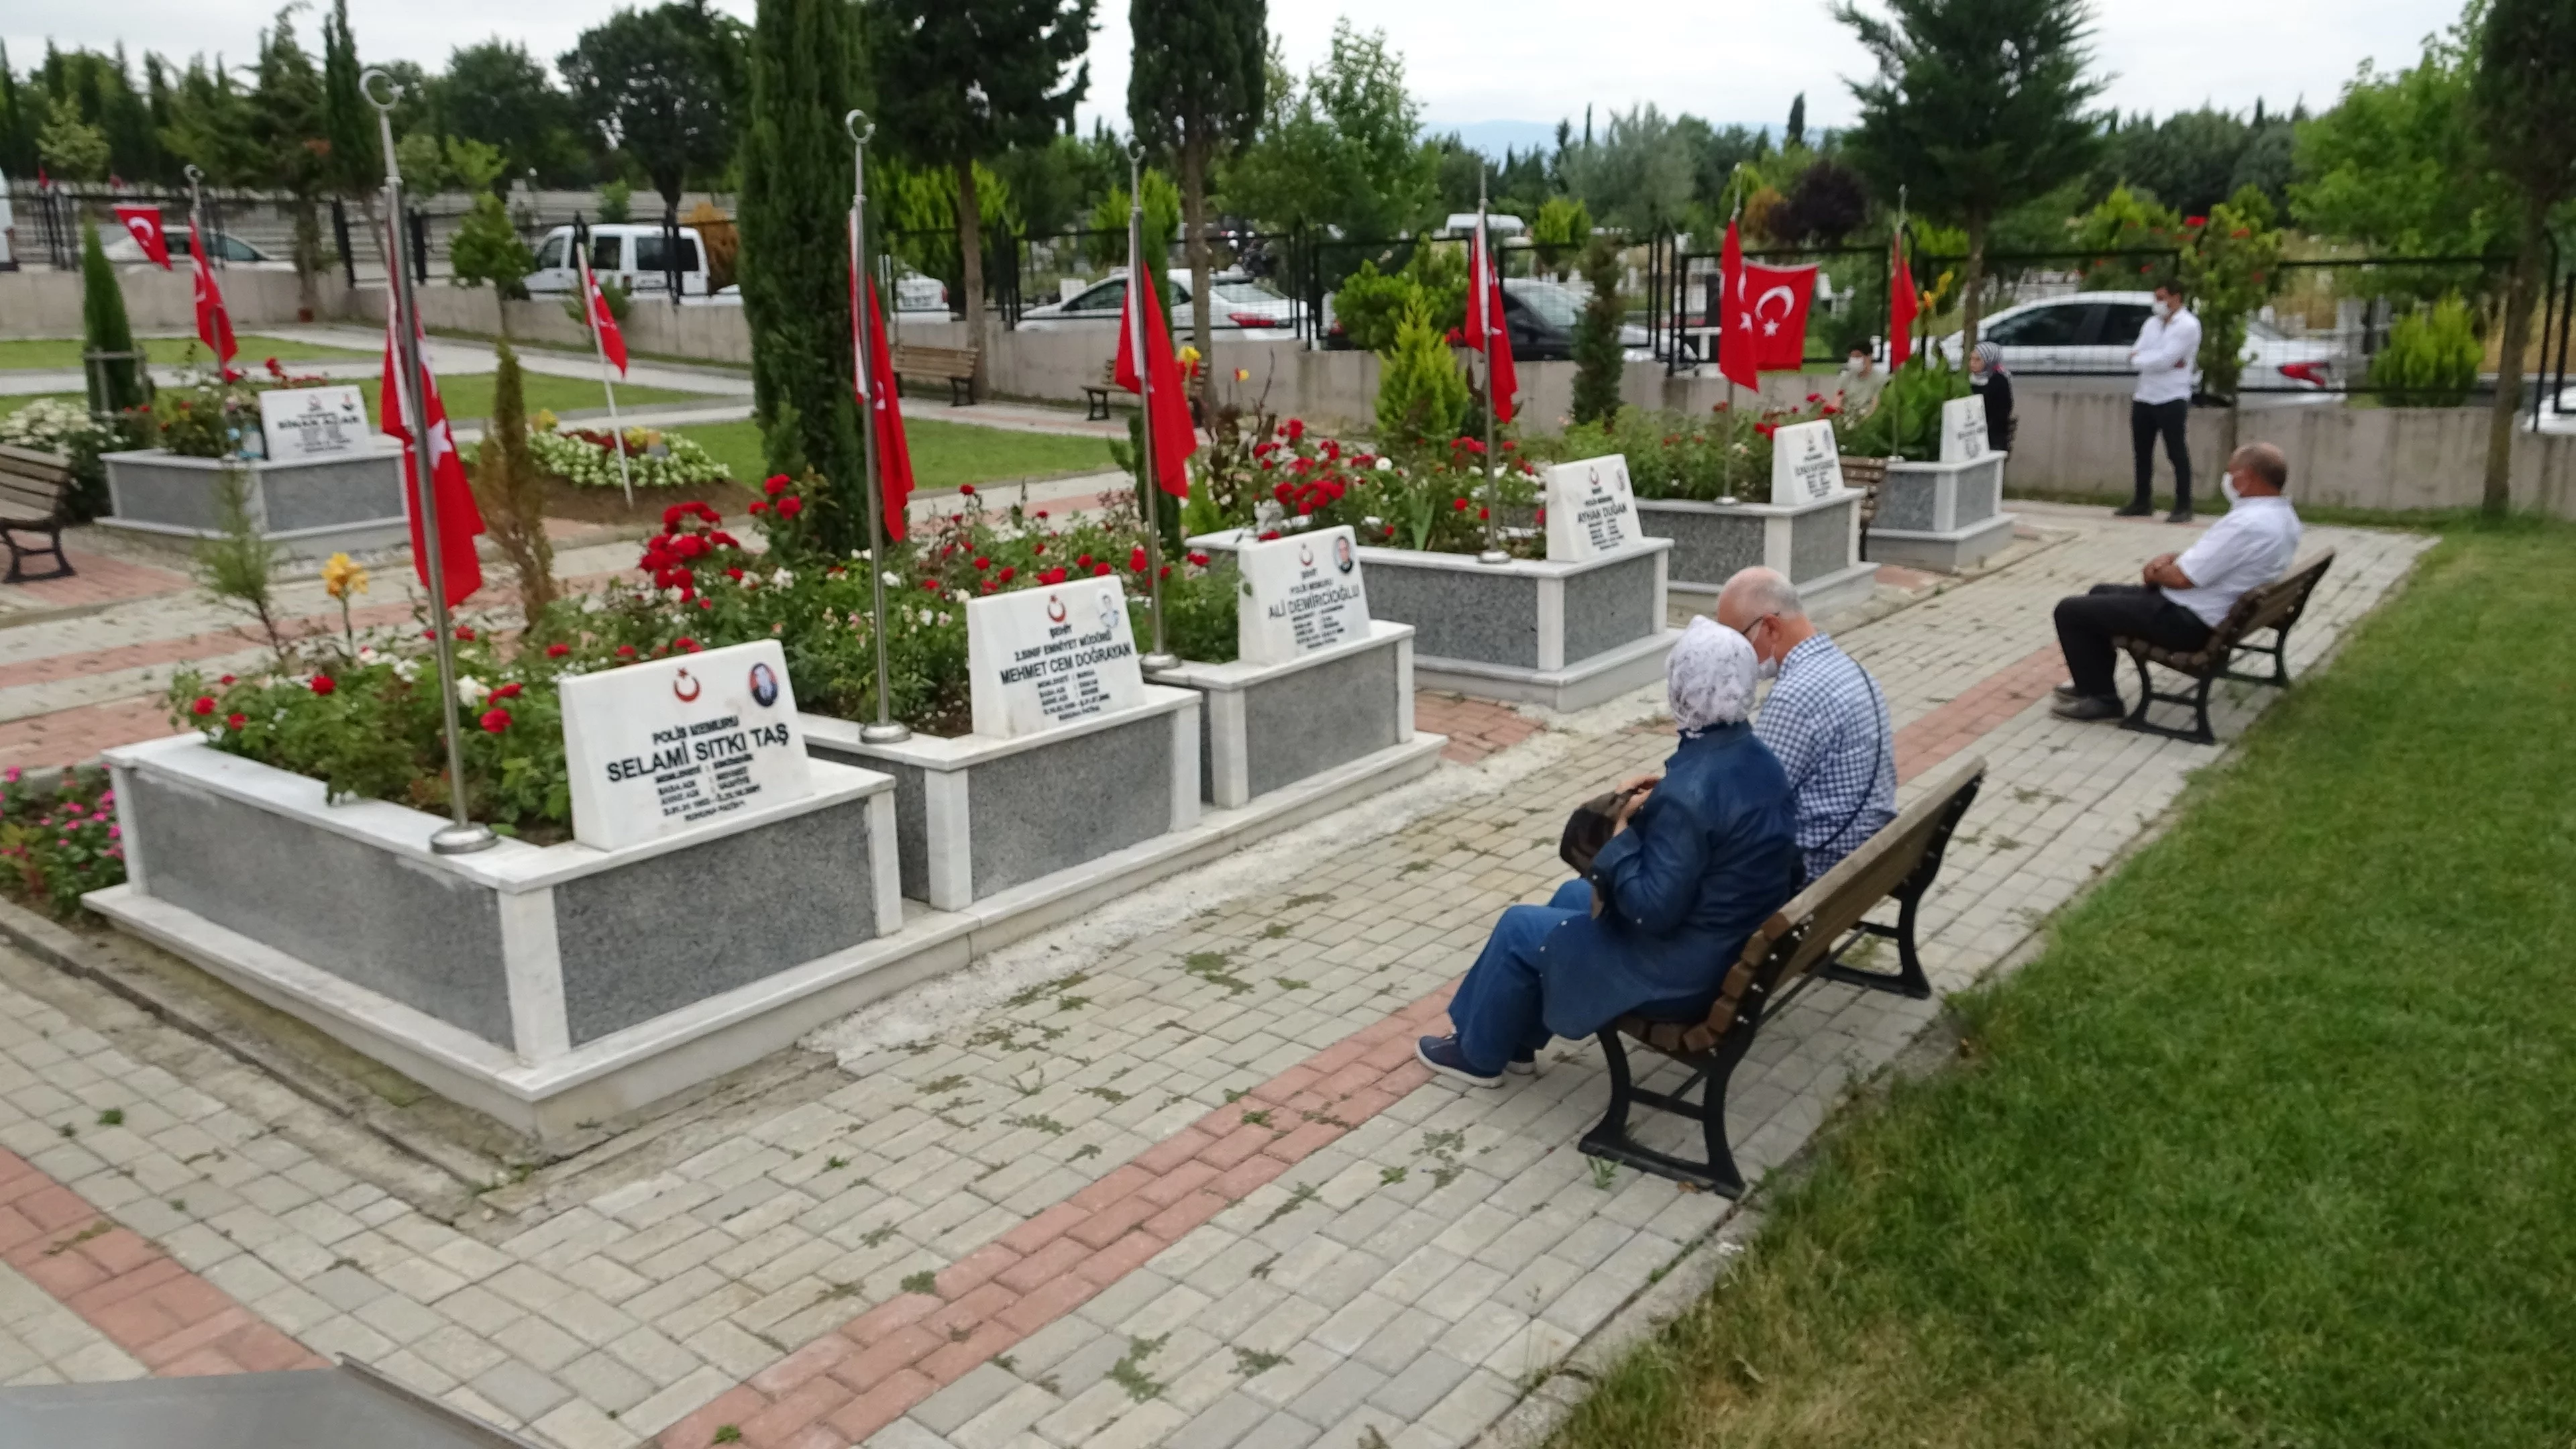 Bursa'da şehitlikte anma töreni düzenlendi